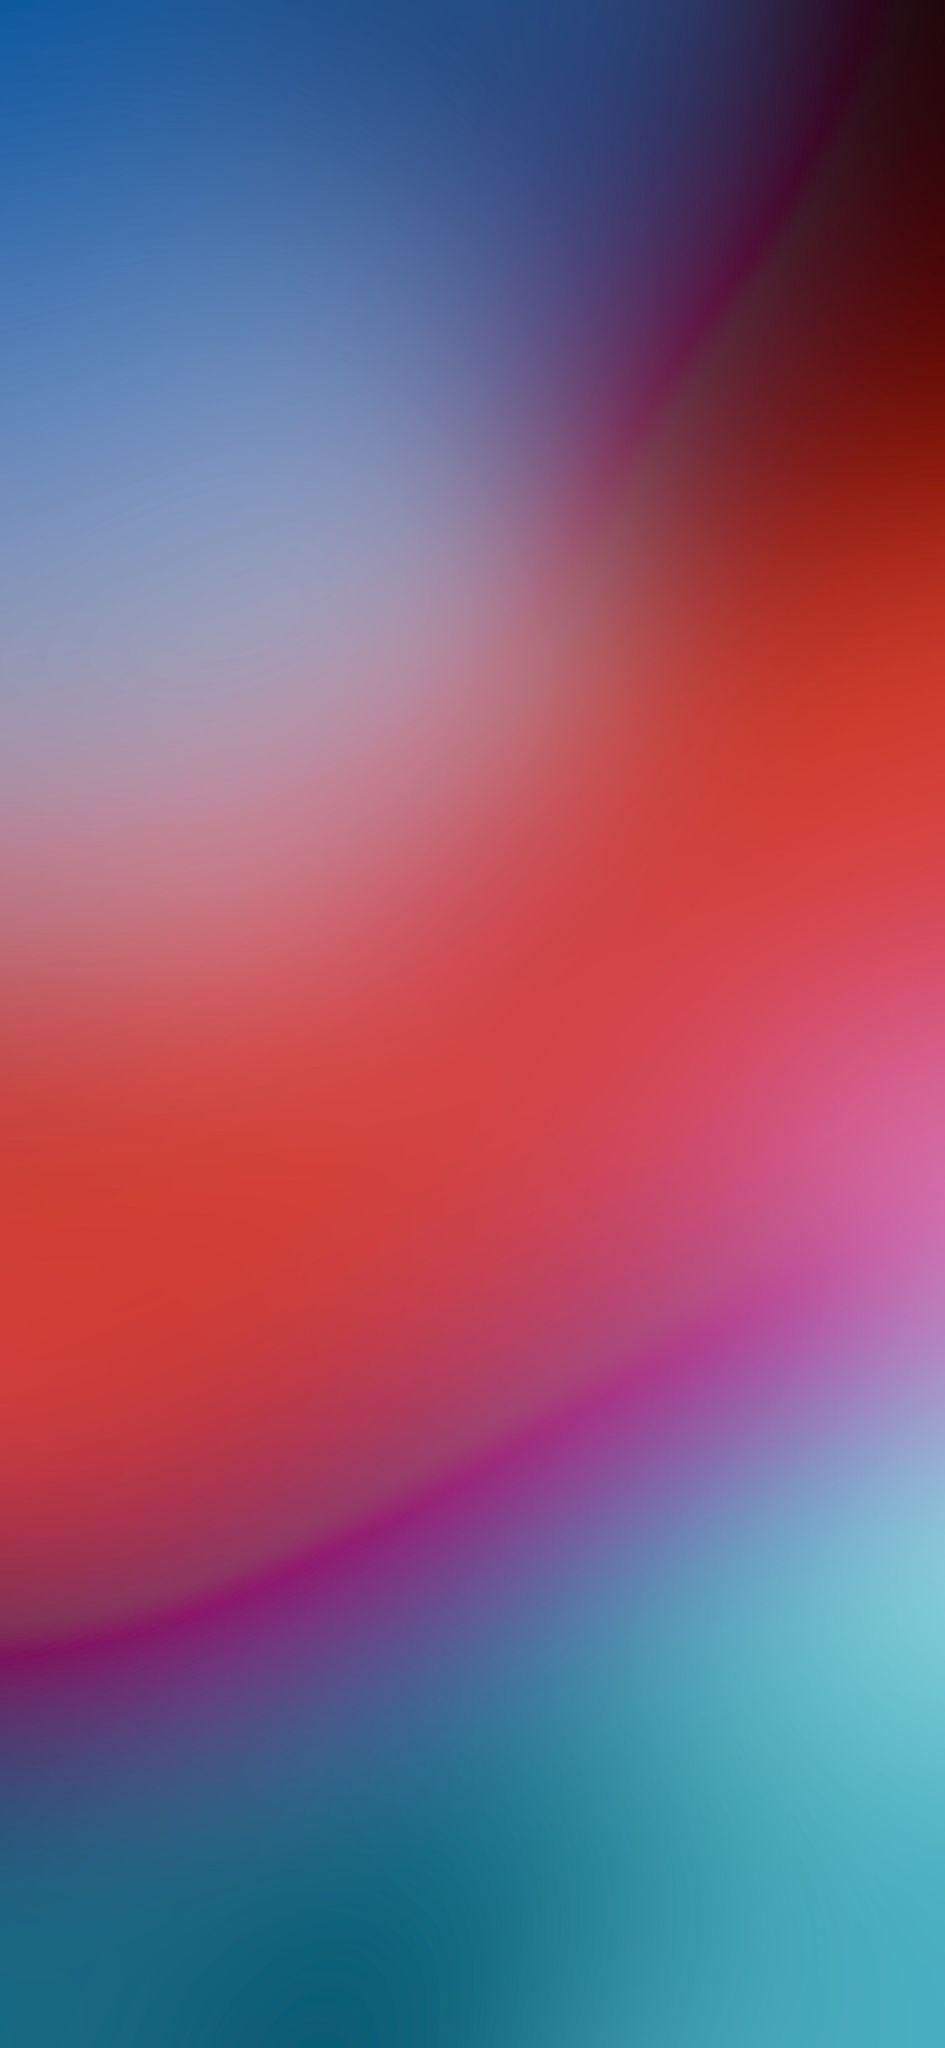 Ảnh và hình ảnh có sẵn về Grey blur background – 1.002.555 ảnh |  Shutterstock